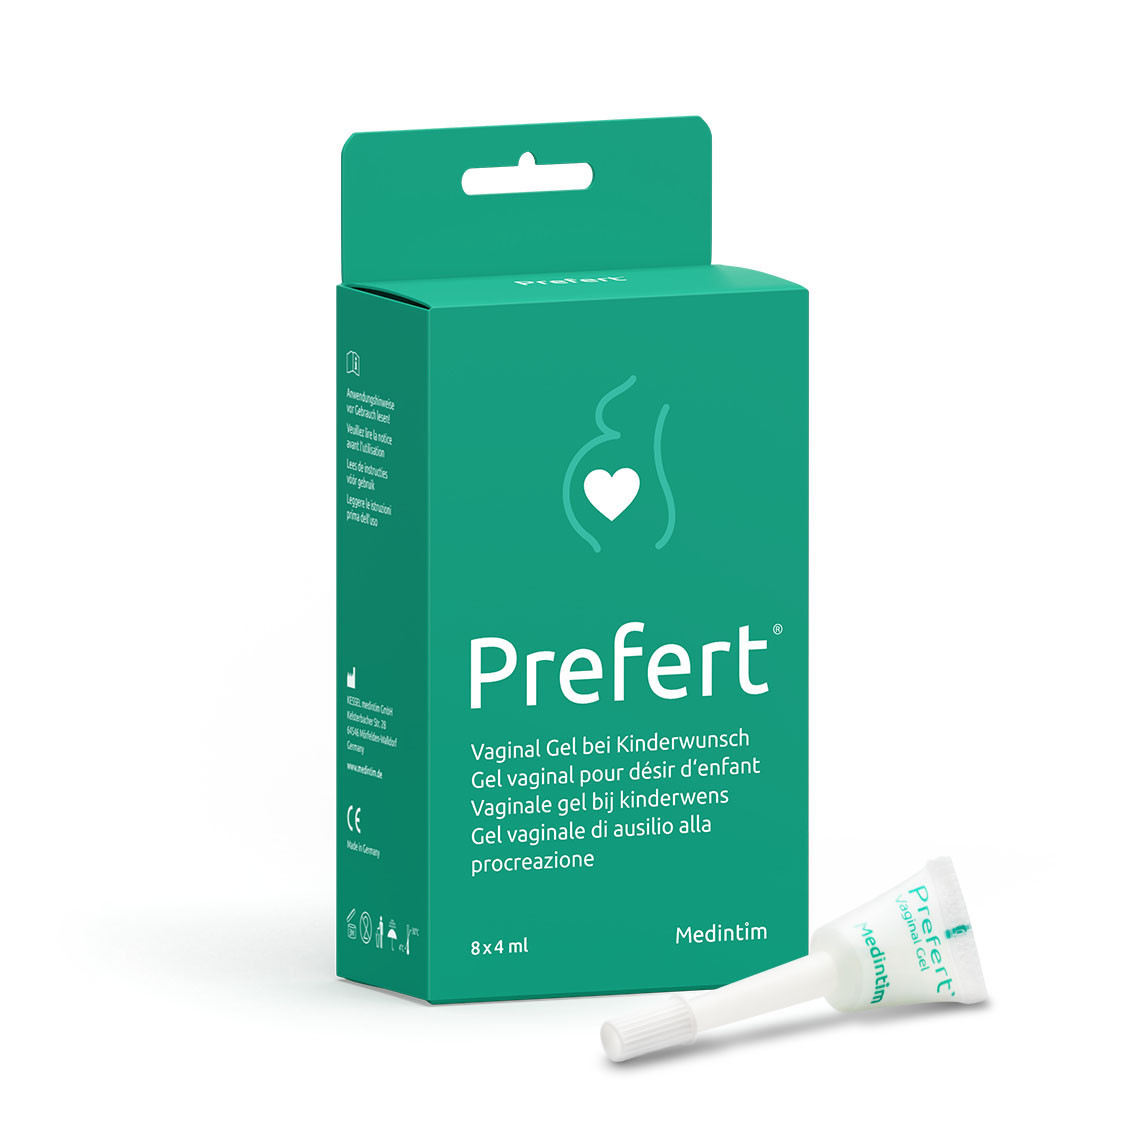 Prefert® Vaginal Gleitmittel bei Kinderwunsch